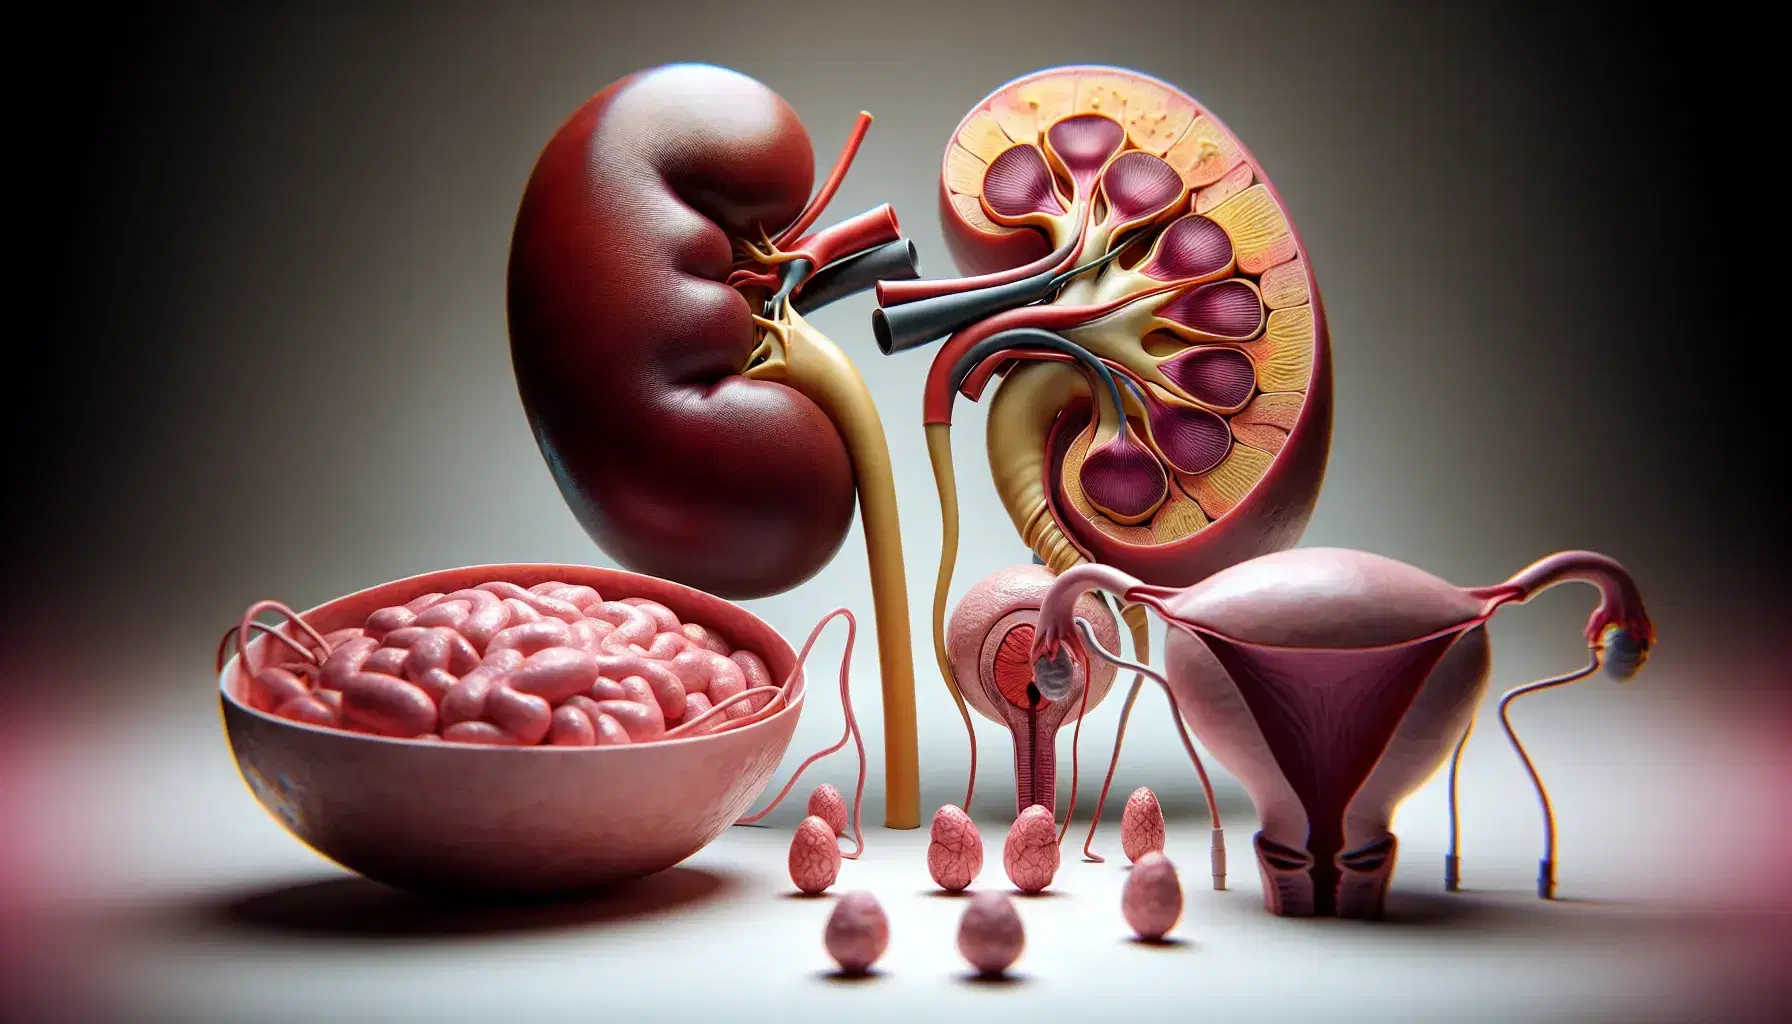 Modelo anatómico detallado de órganos urinarios y reproductores humanos, mostrando riñón, glándula suprarrenal, vejiga, uréteres, uretra y órganos genitales masculinos y femeninos.